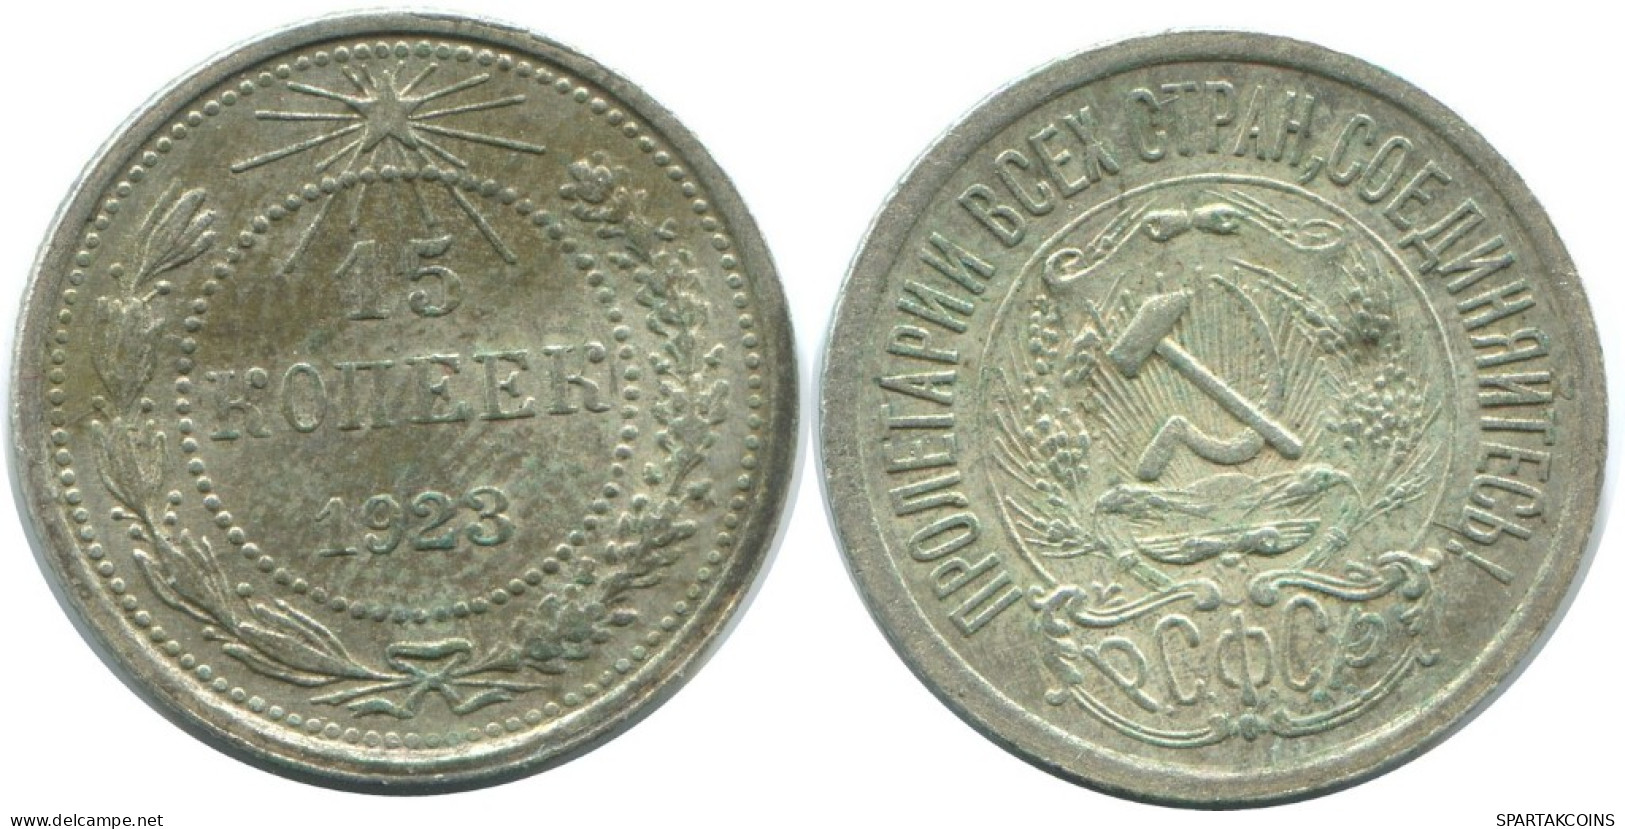 15 KOPEKS 1923 RUSSIA RSFSR SILVER Coin HIGH GRADE #AF067.4.U.A - Russland